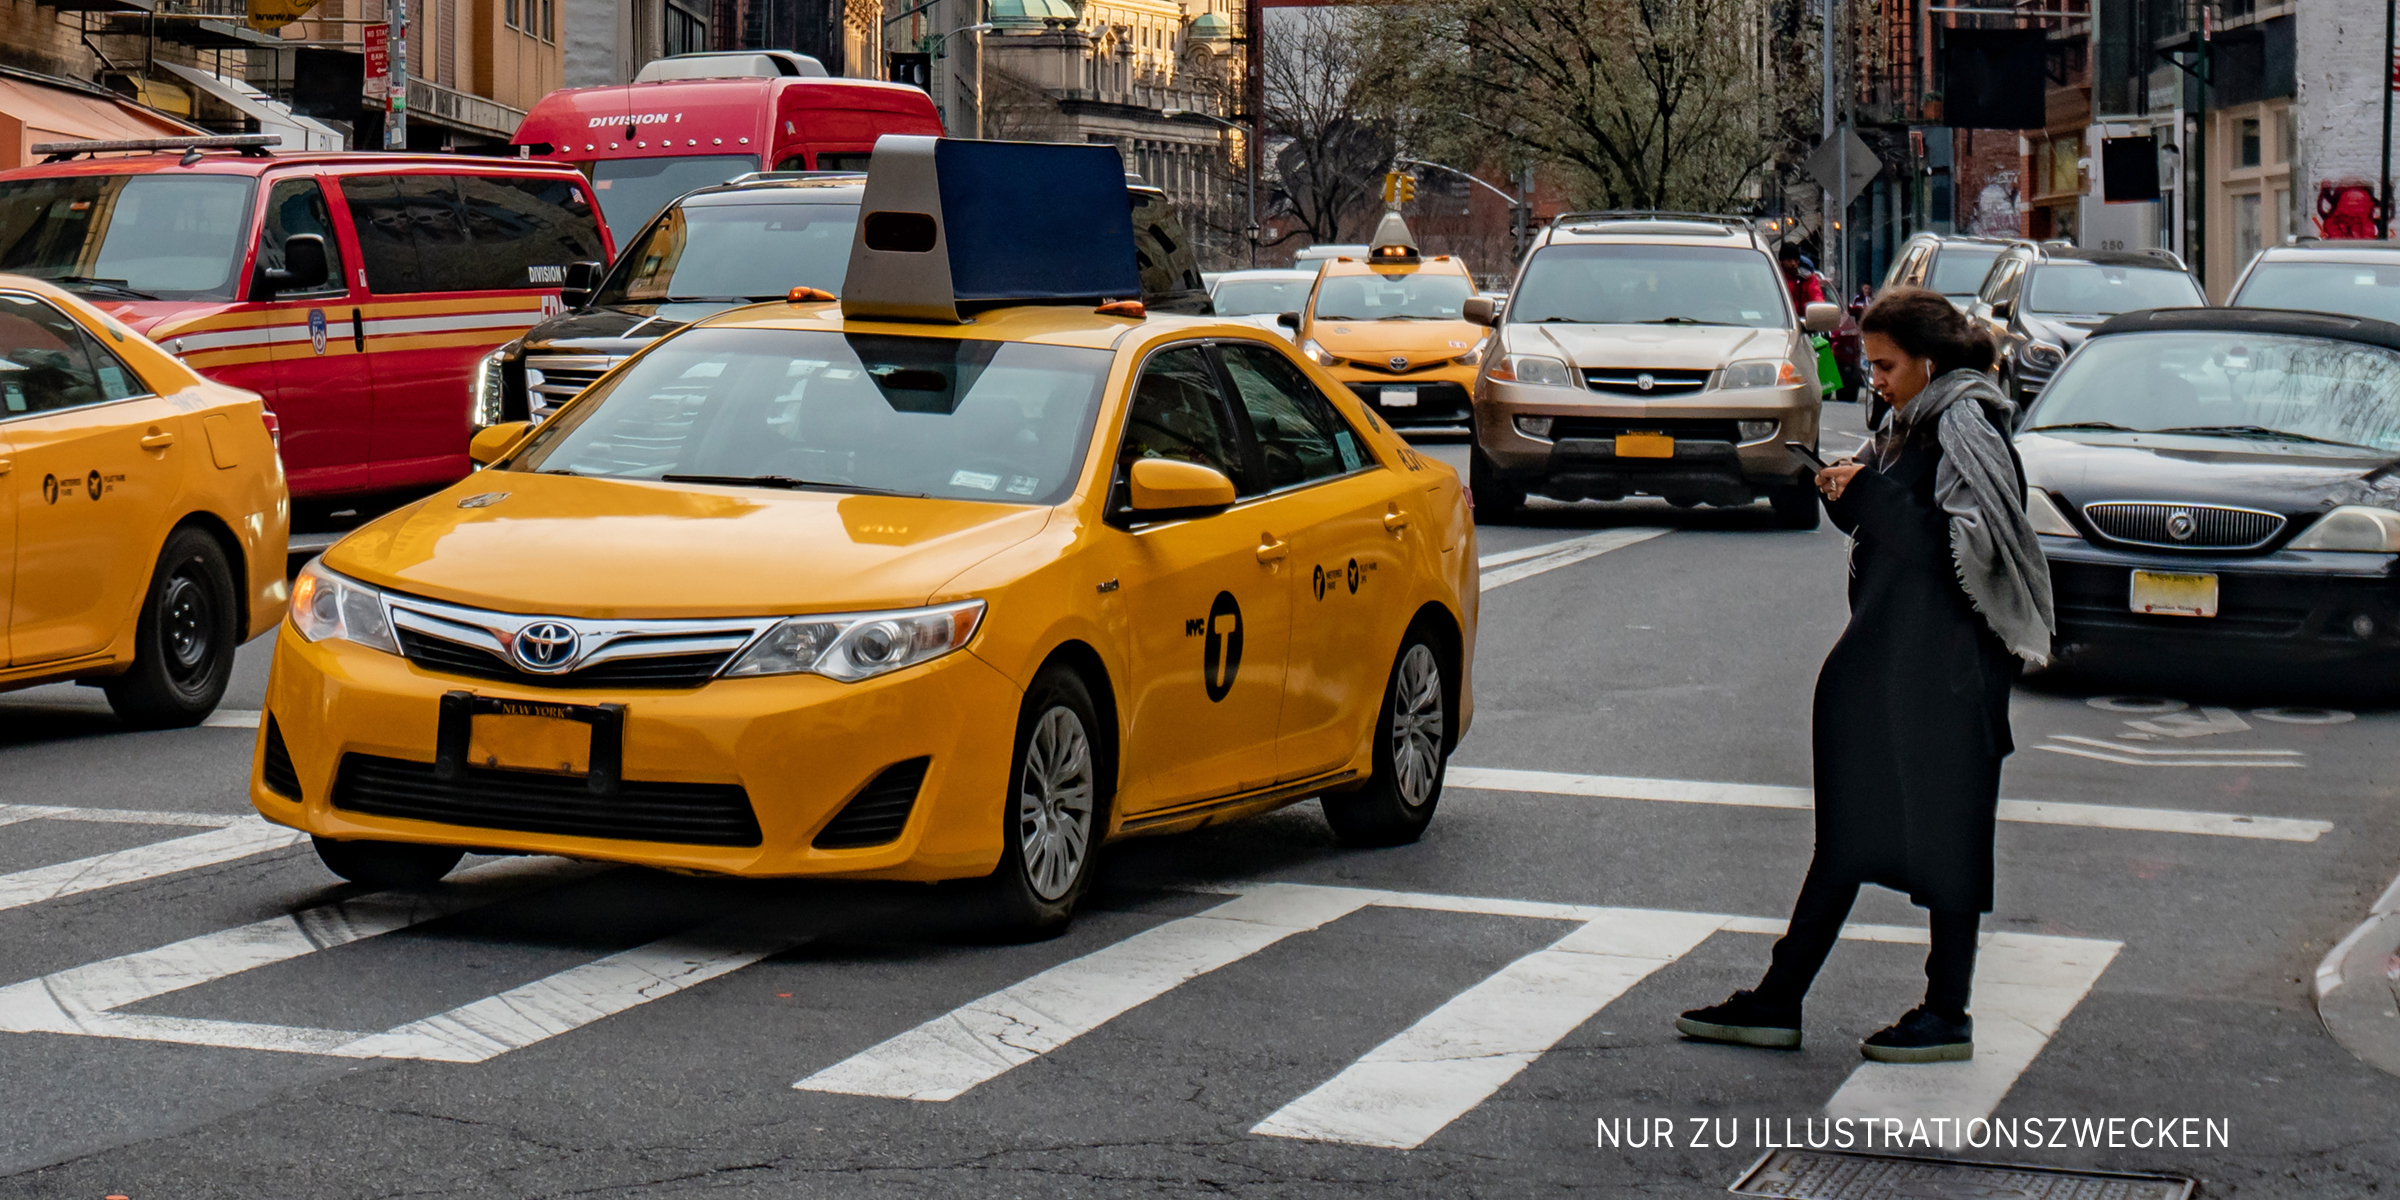 Taxi auf einer Straße | Quelle: Shutterstock